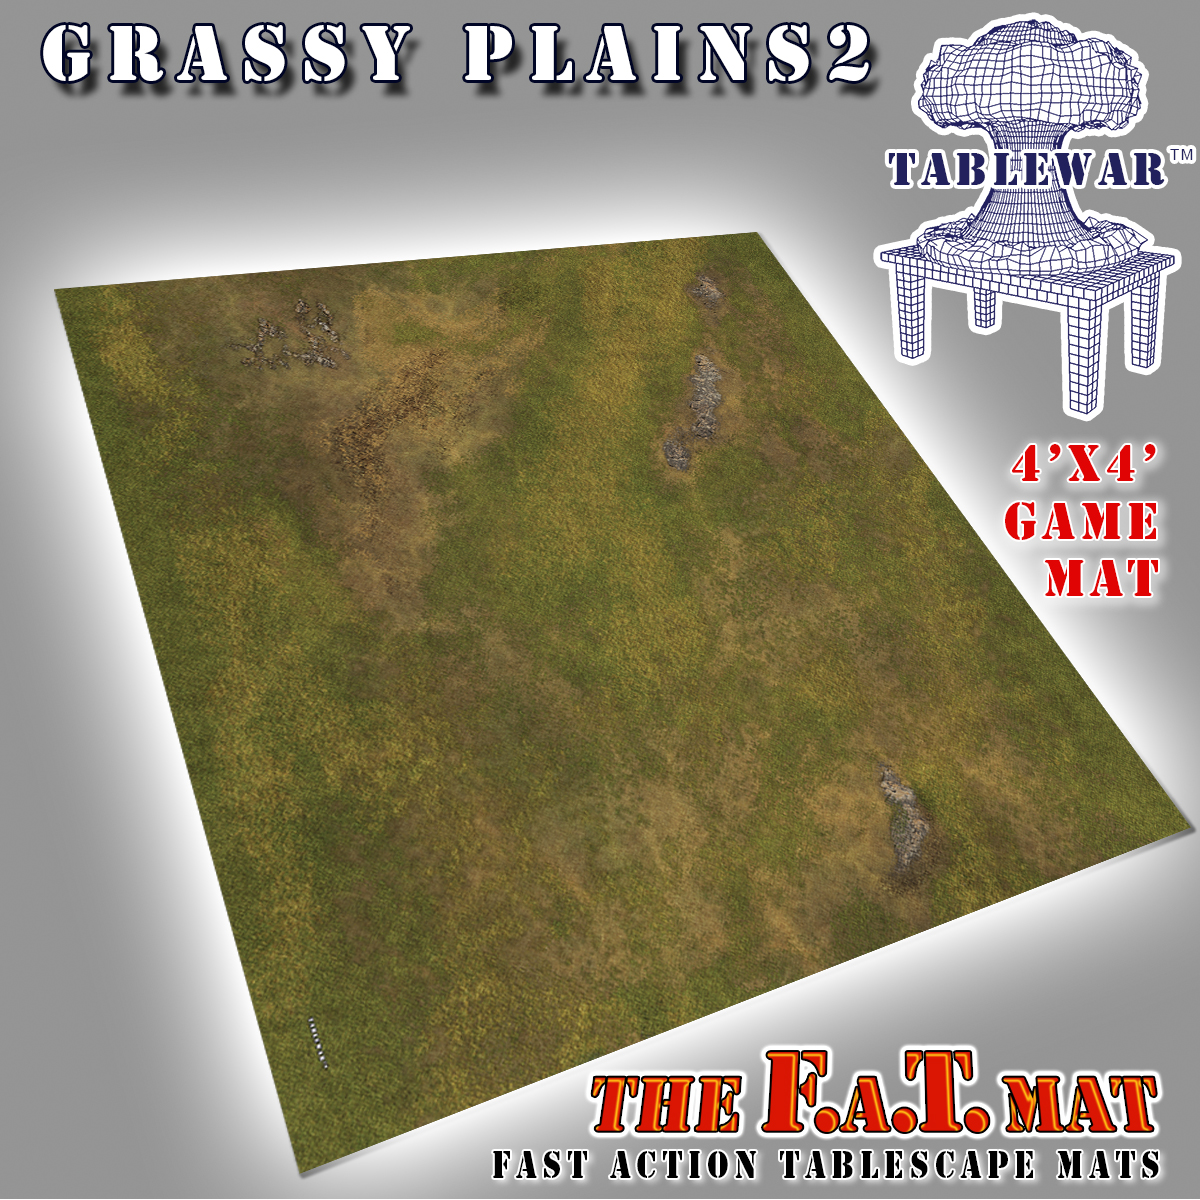 TABLEWAR’s new 4×4 Grassy Plains 2 F.A.T. Mat